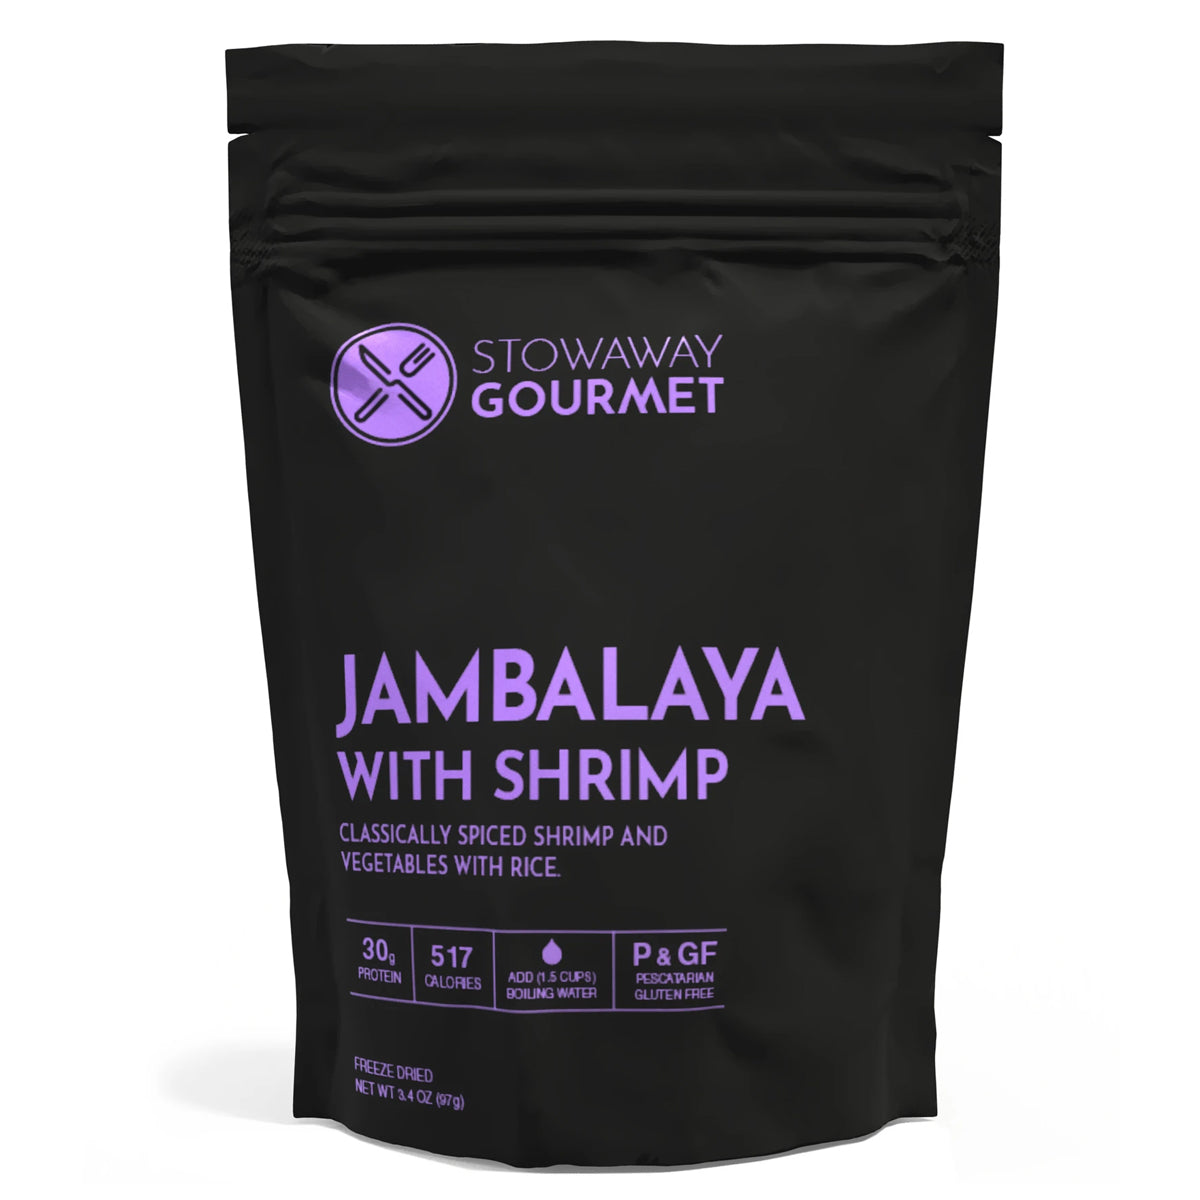 Stowaway Gourmet Jambalaya with Shrimp